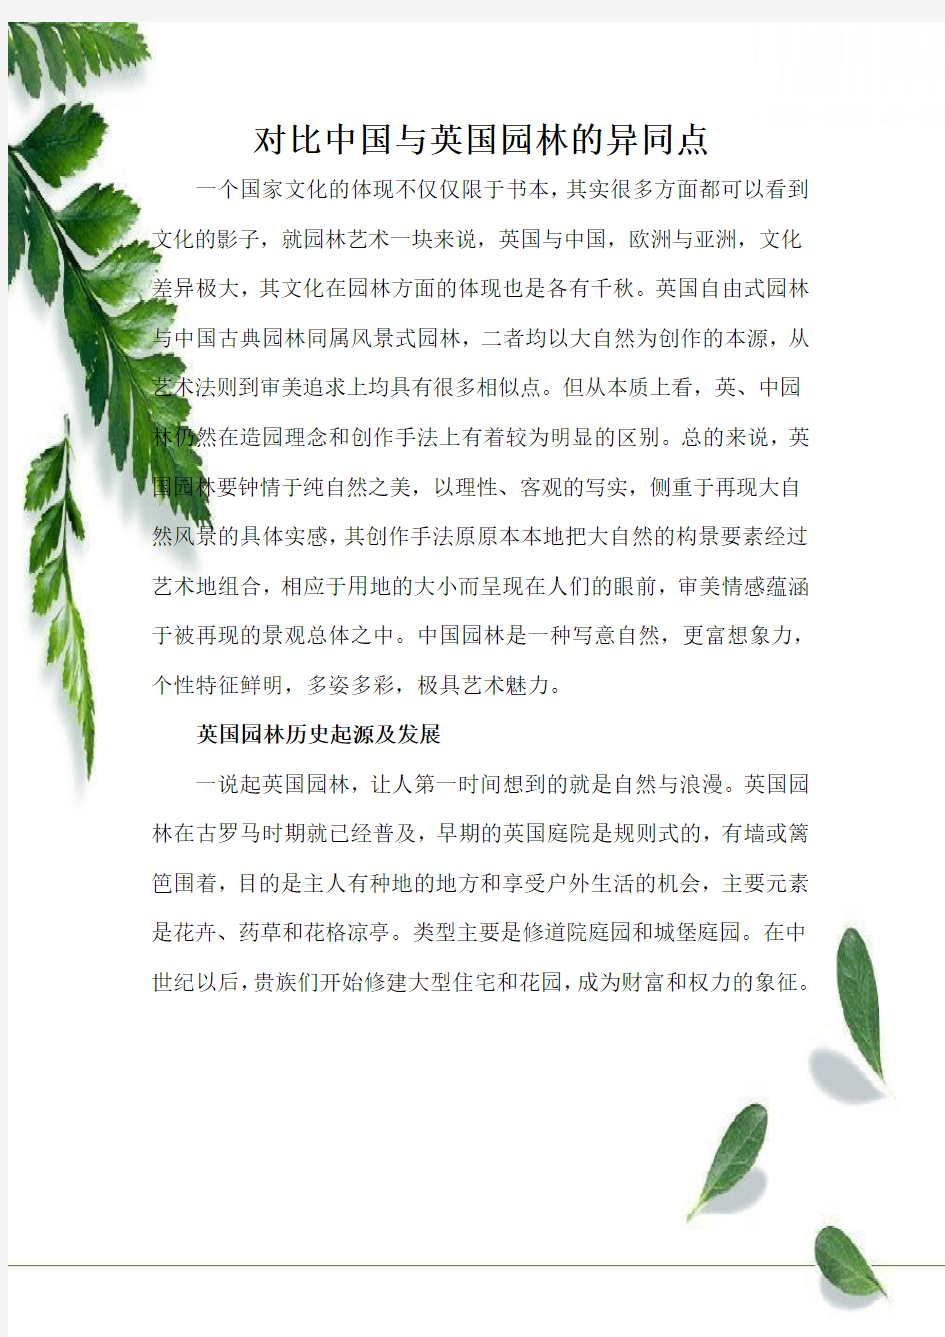 中国古典园林与英国自由式园林的对比(包含历史起源以及特点)